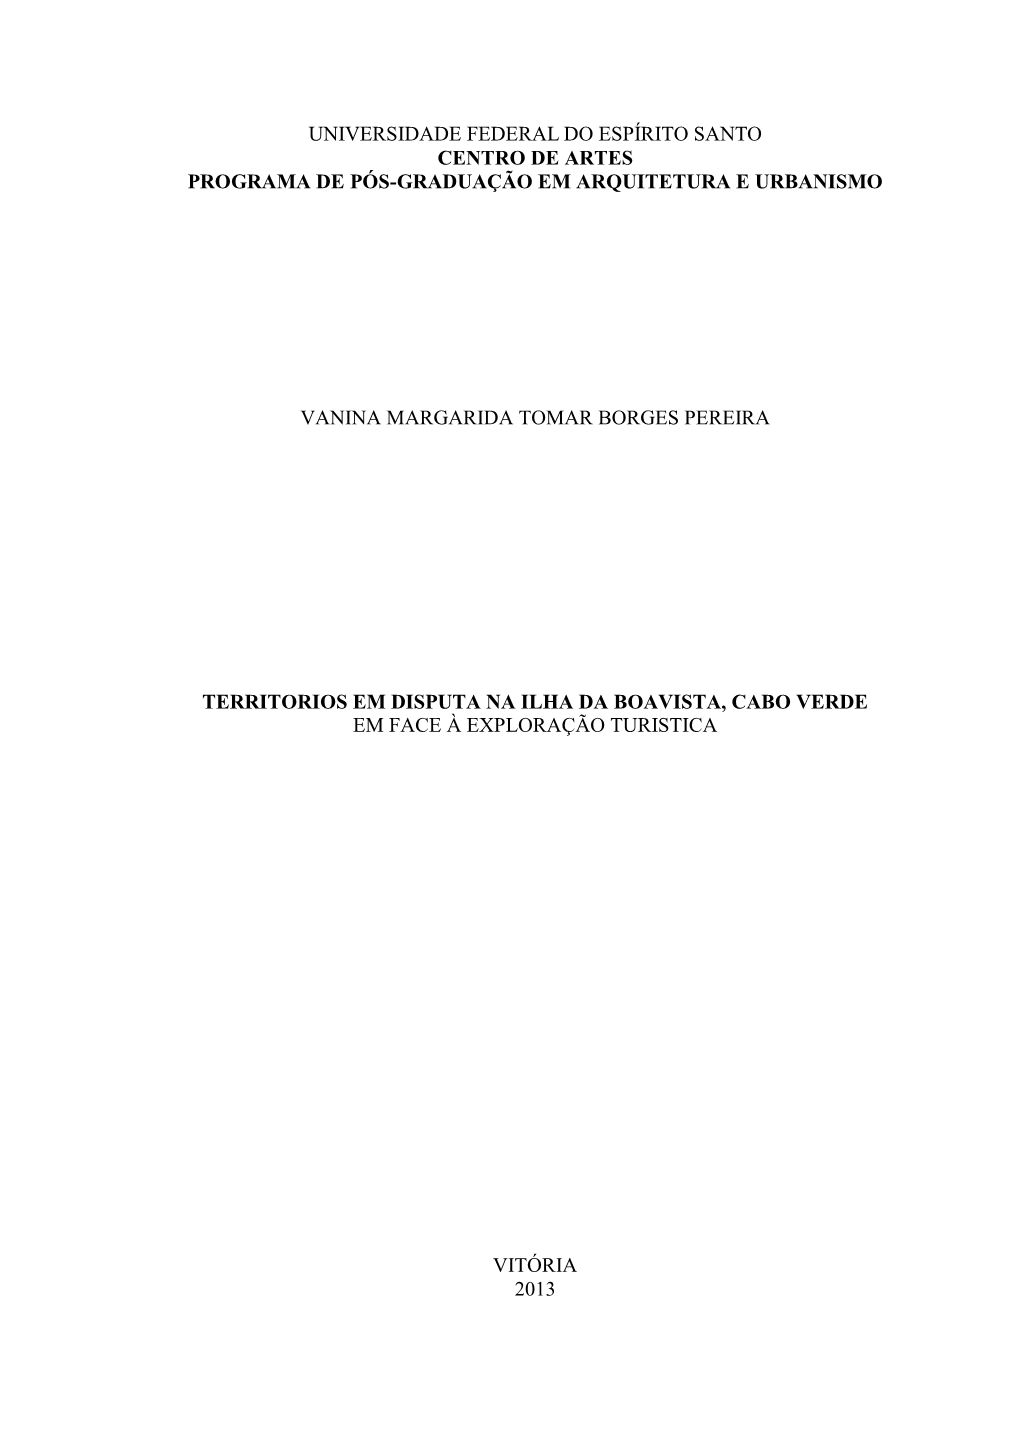 Dissertação De Vanina Margarida Tomar Borges Pereira